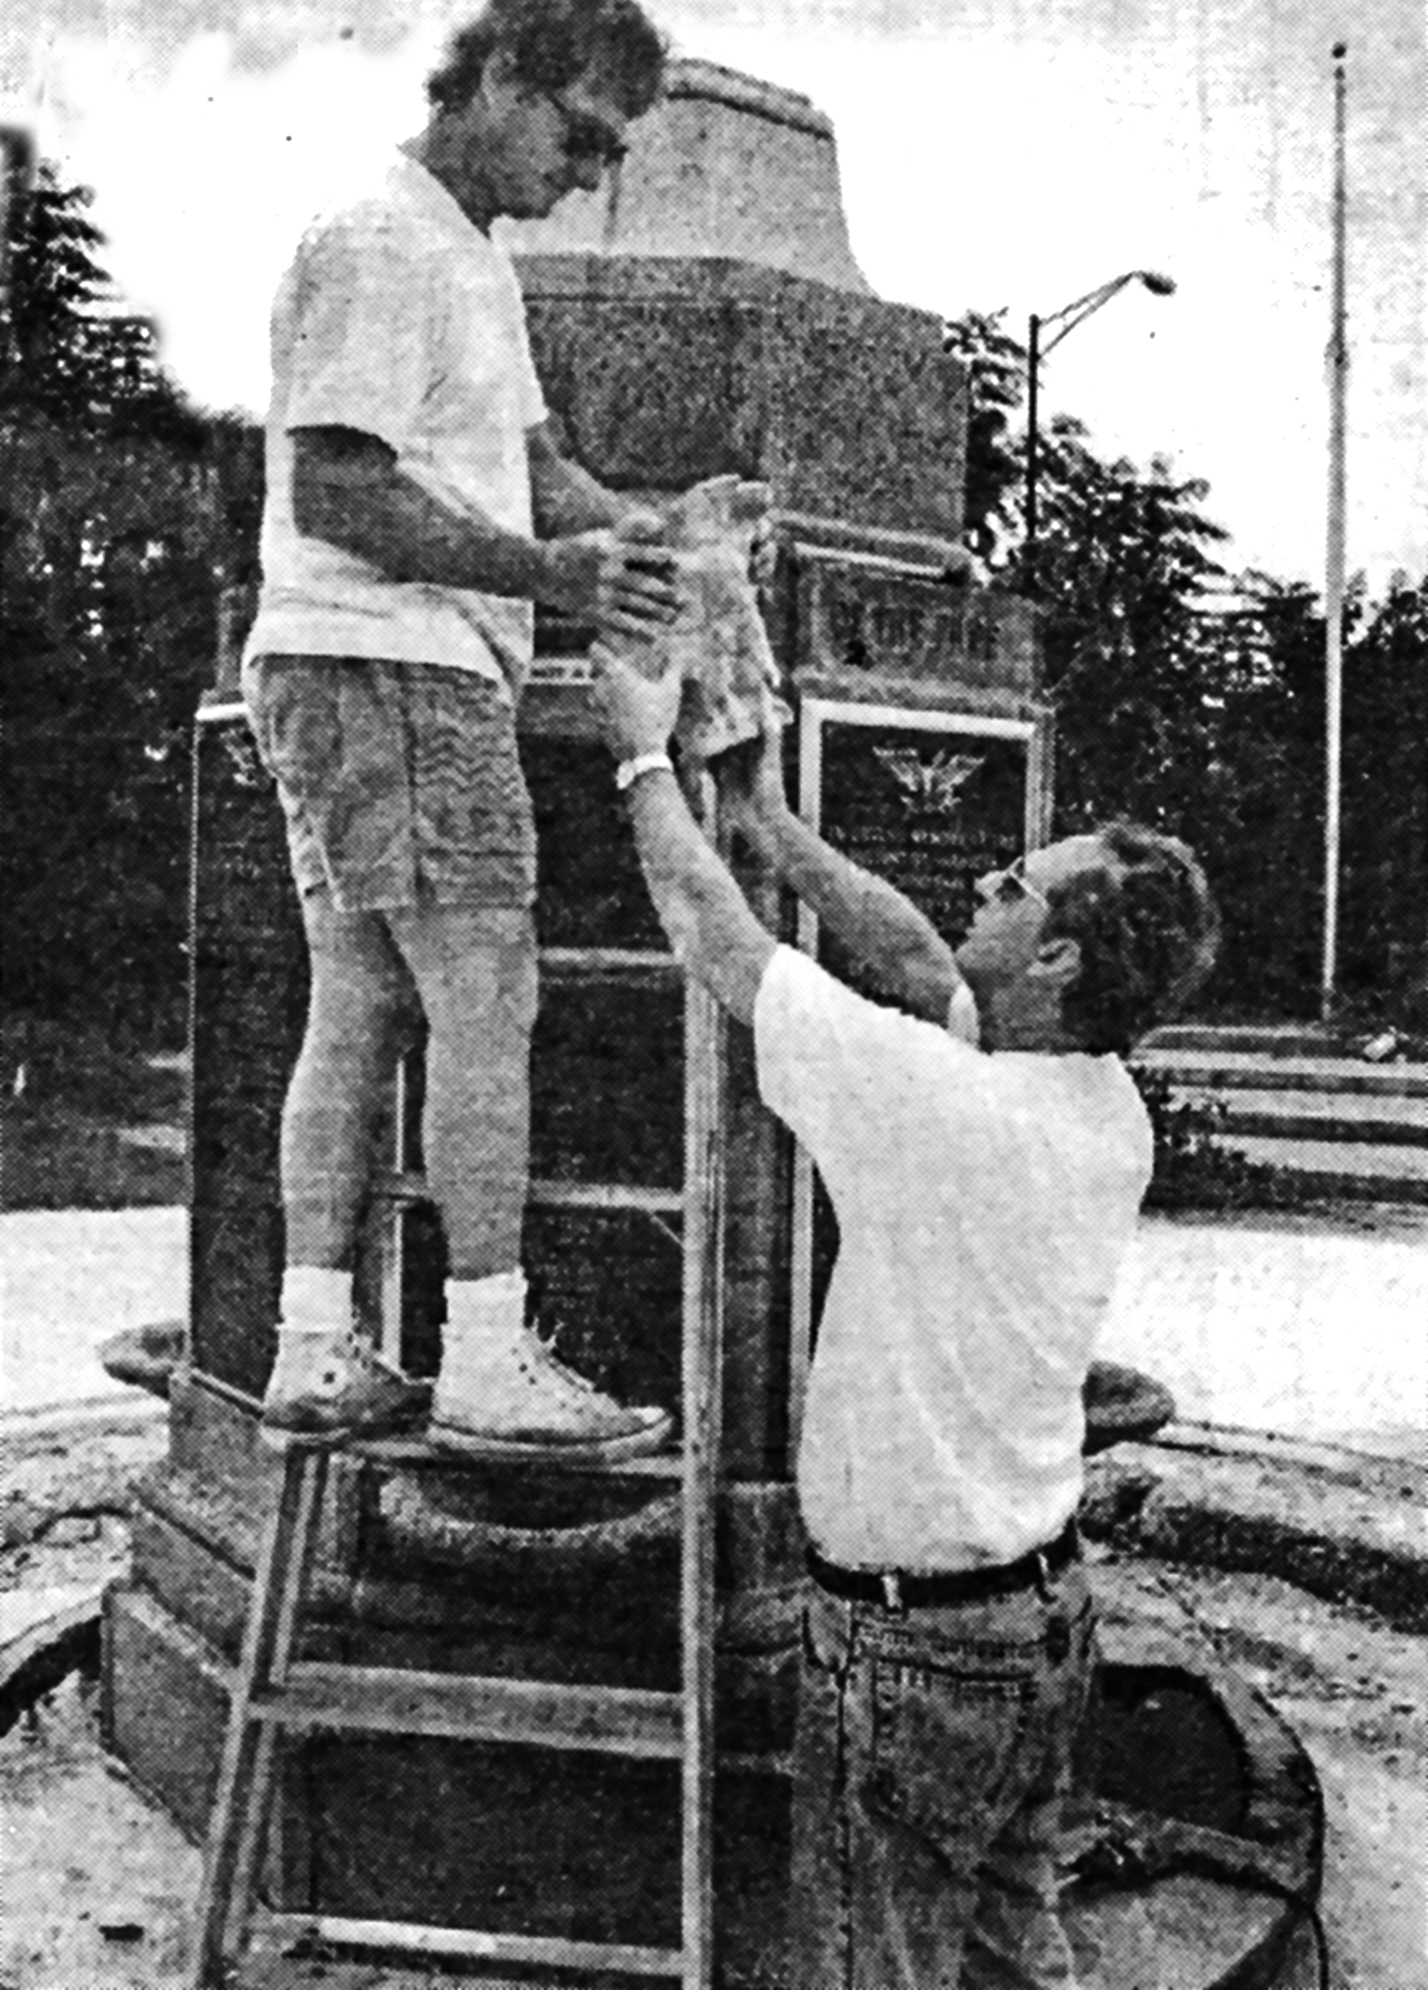 Brian Bishop, then president of the Sarasota County Homebuilders Association, and former Sarasota Mayor Jack Gurney install recast eagles on the Veterans' Monument in JD Hamel Park.